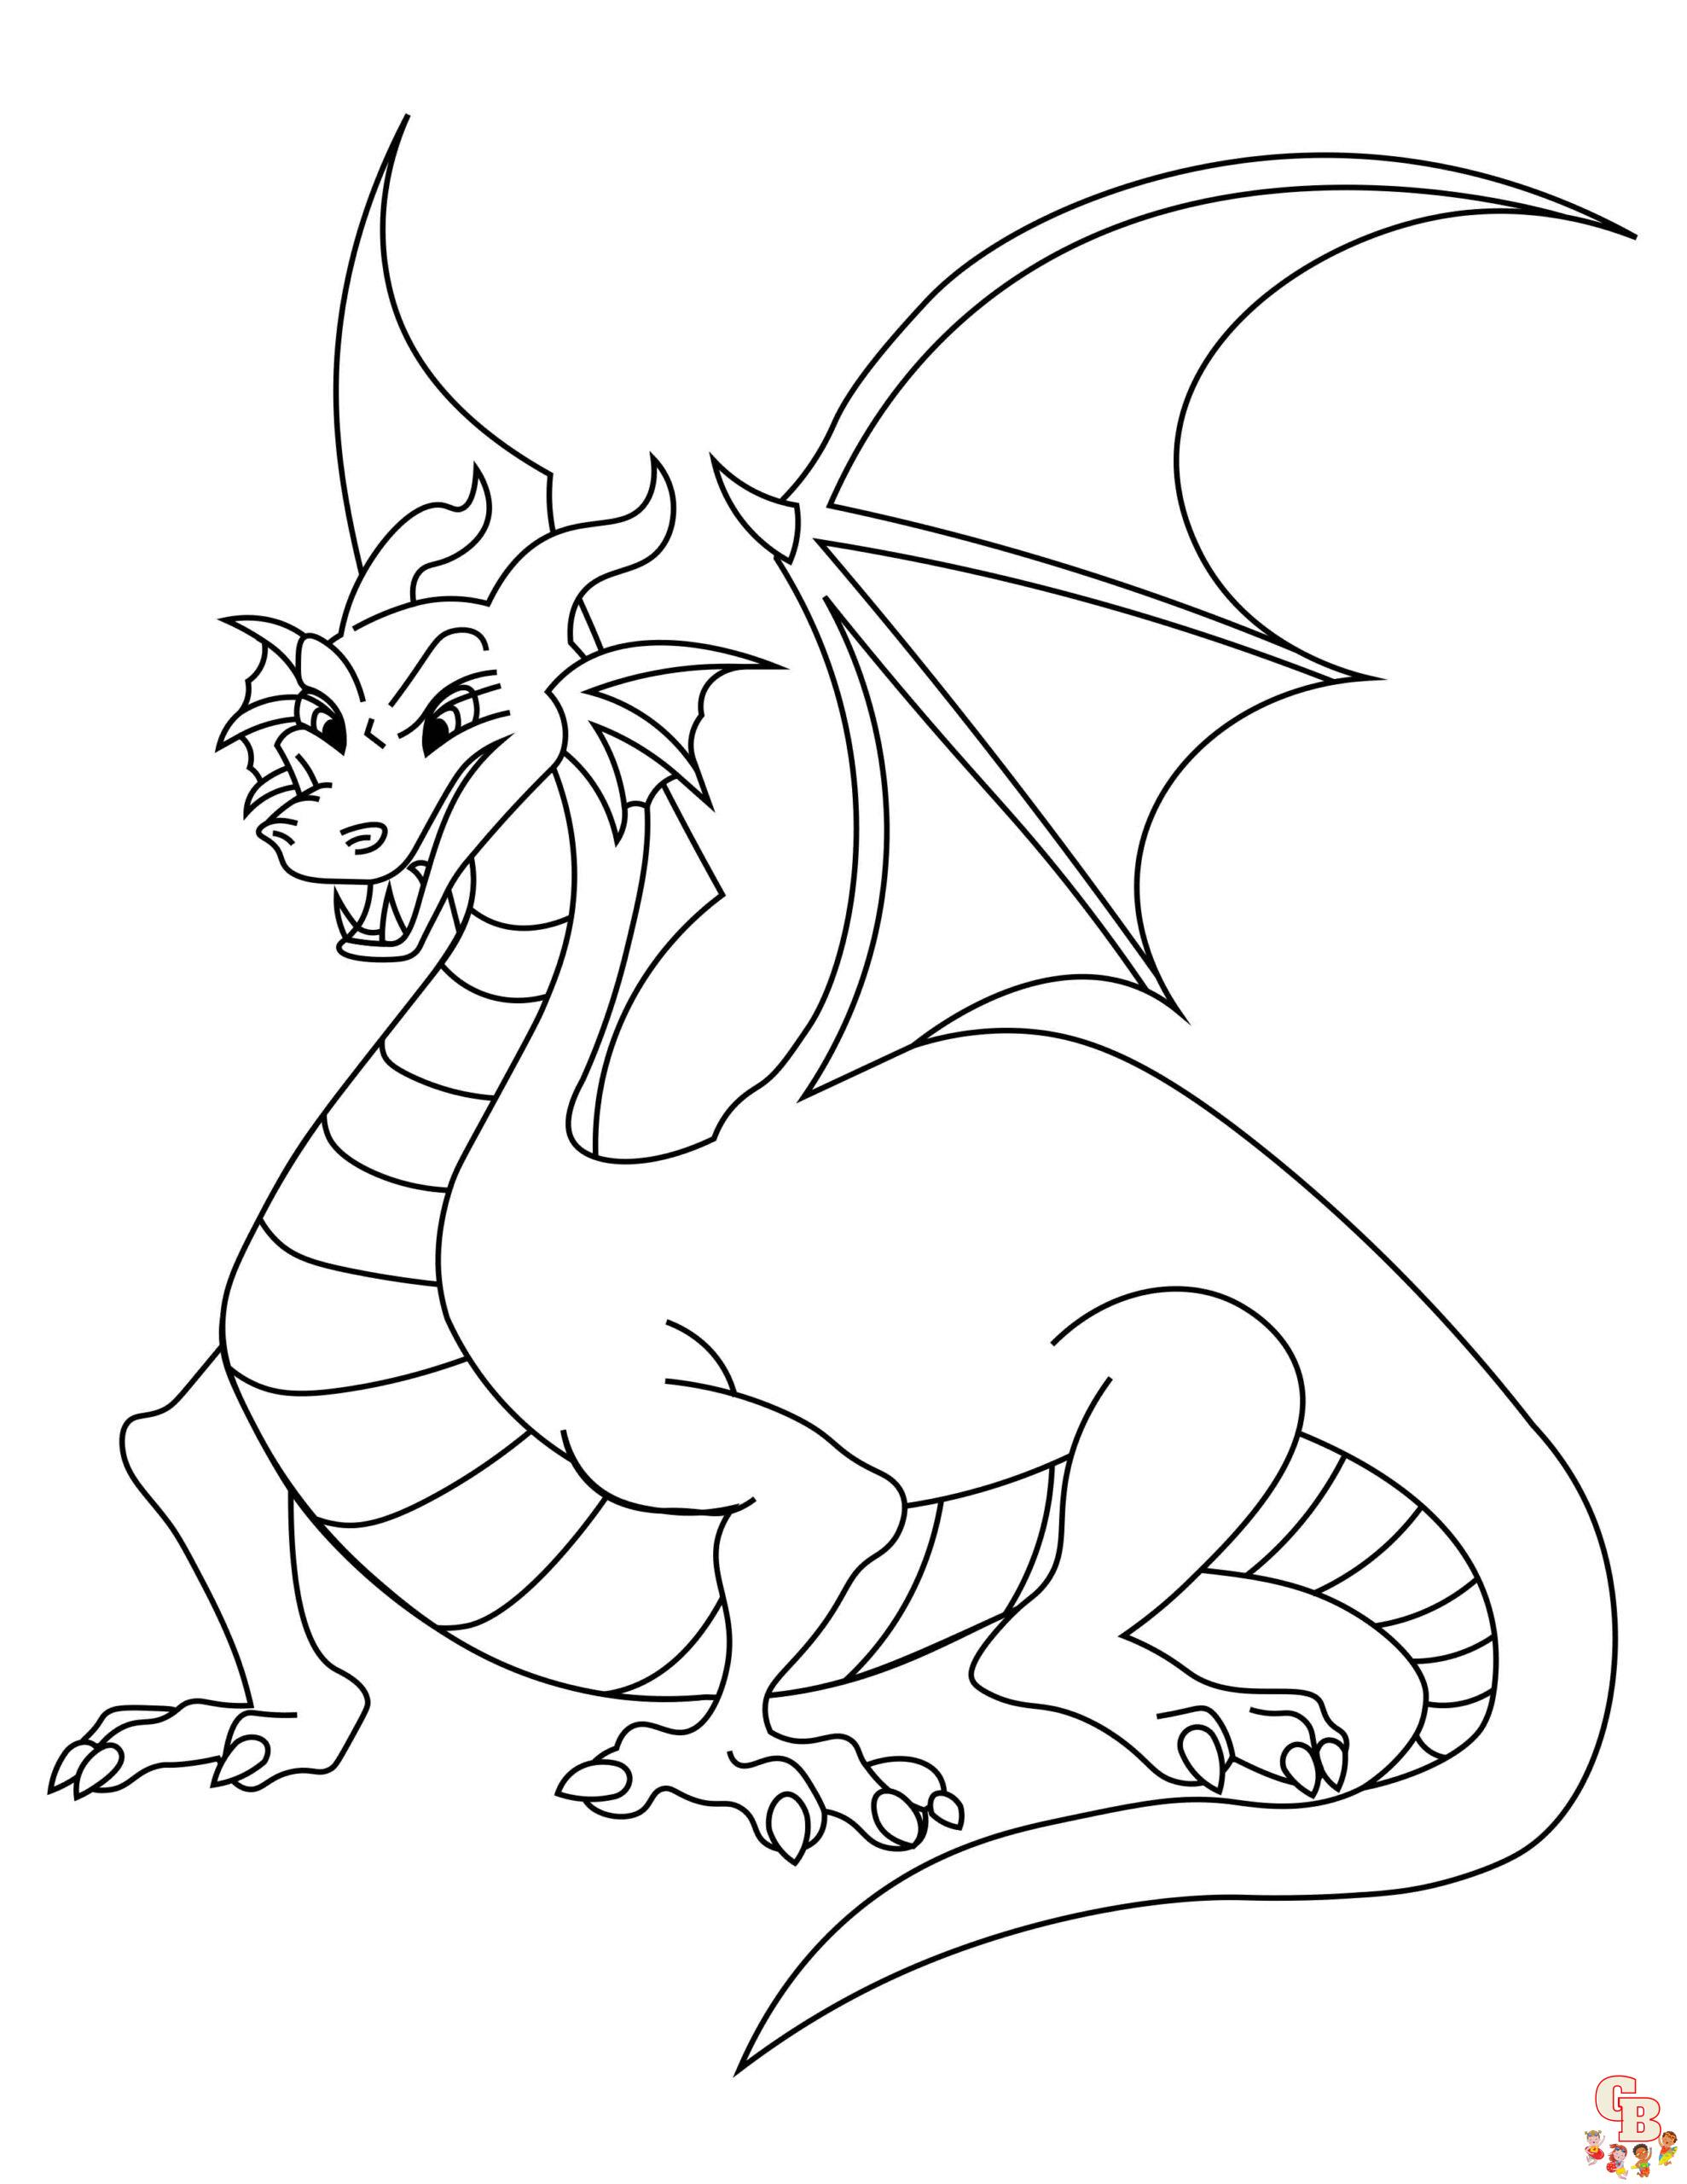 Играть в раскраску Злой дракон онлайн